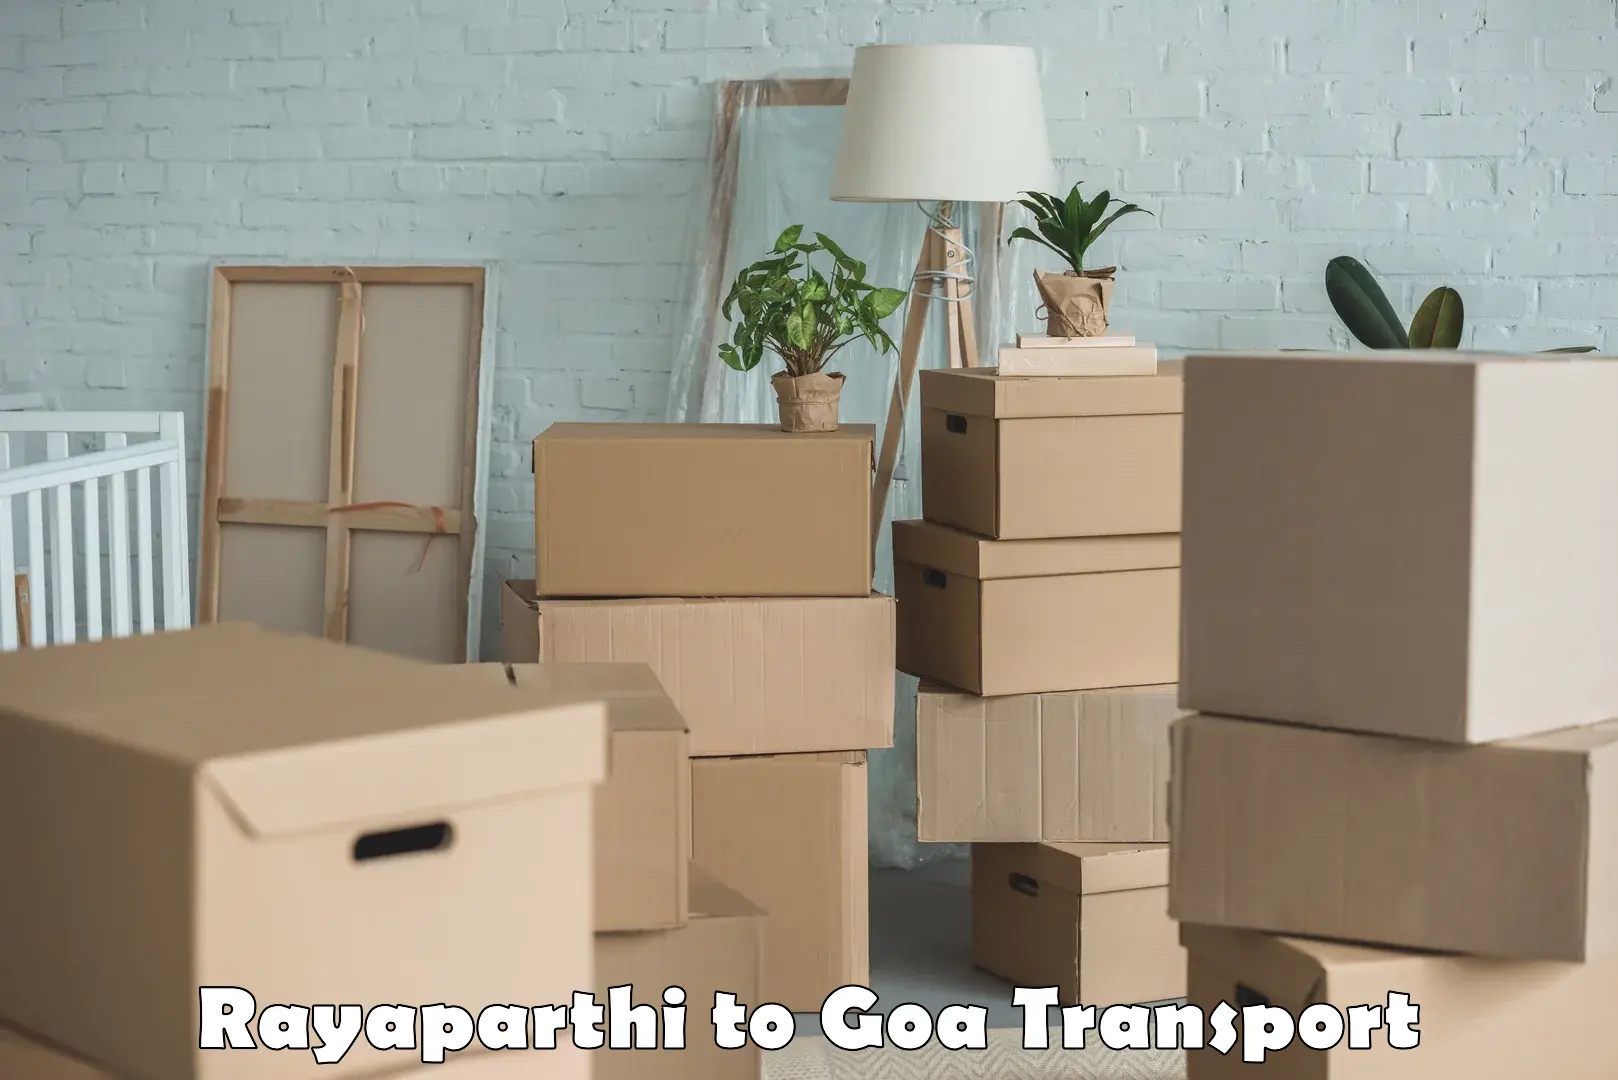 Cargo train transport services Rayaparthi to NIT Goa